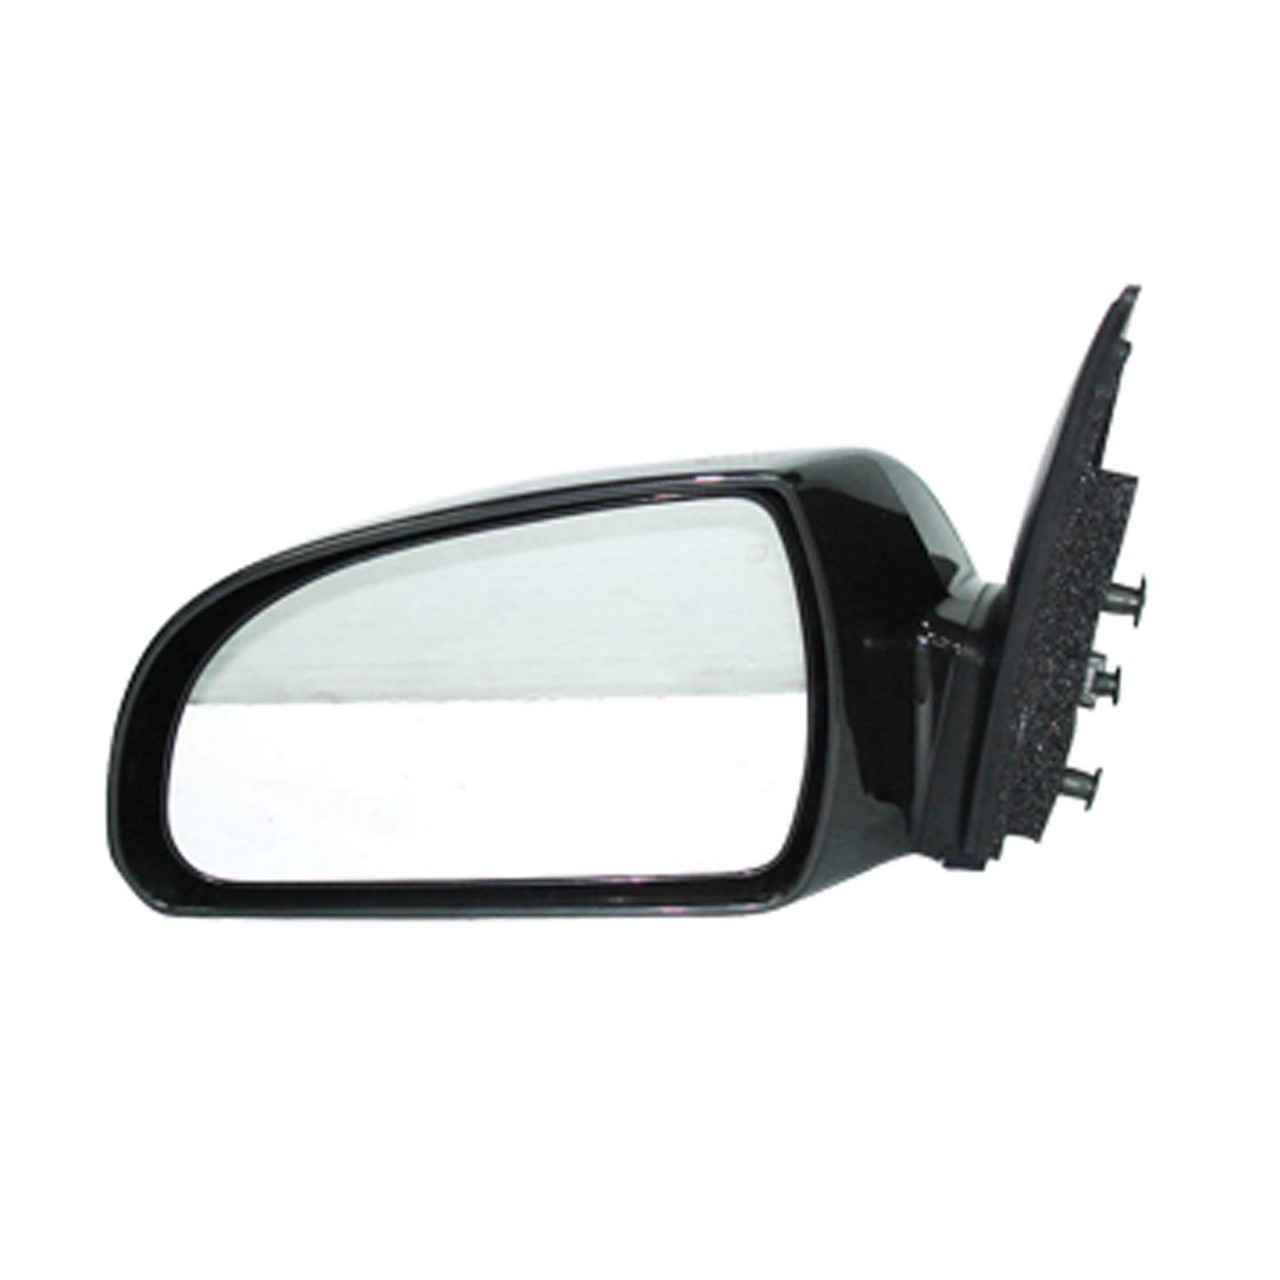 Door Mirror Compatible with Hyundai Sonata 2006-2010 Includes Left Driver Side Door Mirror